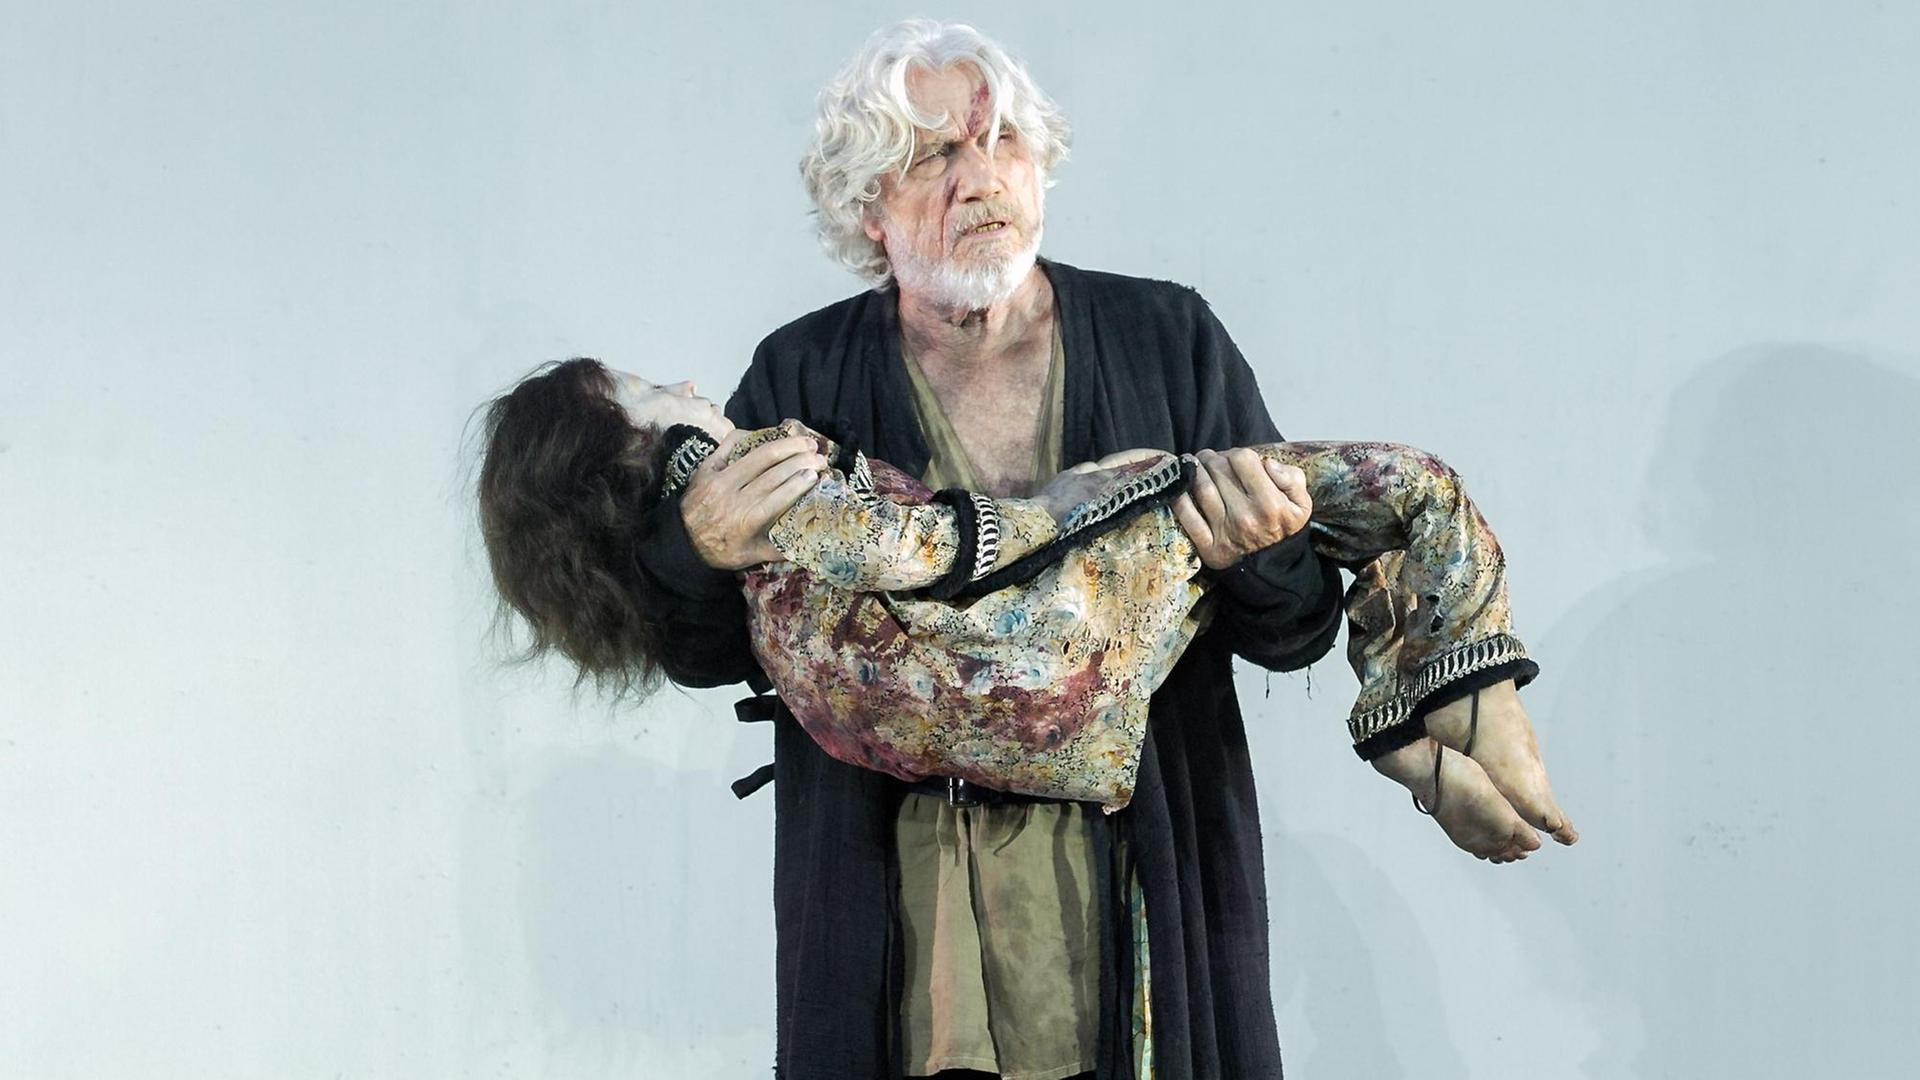 Szenenfoto aus dem Stück "Siegfrieds Erben", Nibelungenfestspiele Worms: Hunnenkönig Etzel (Jürgen Prochnow) mit seinem toten Sohn.